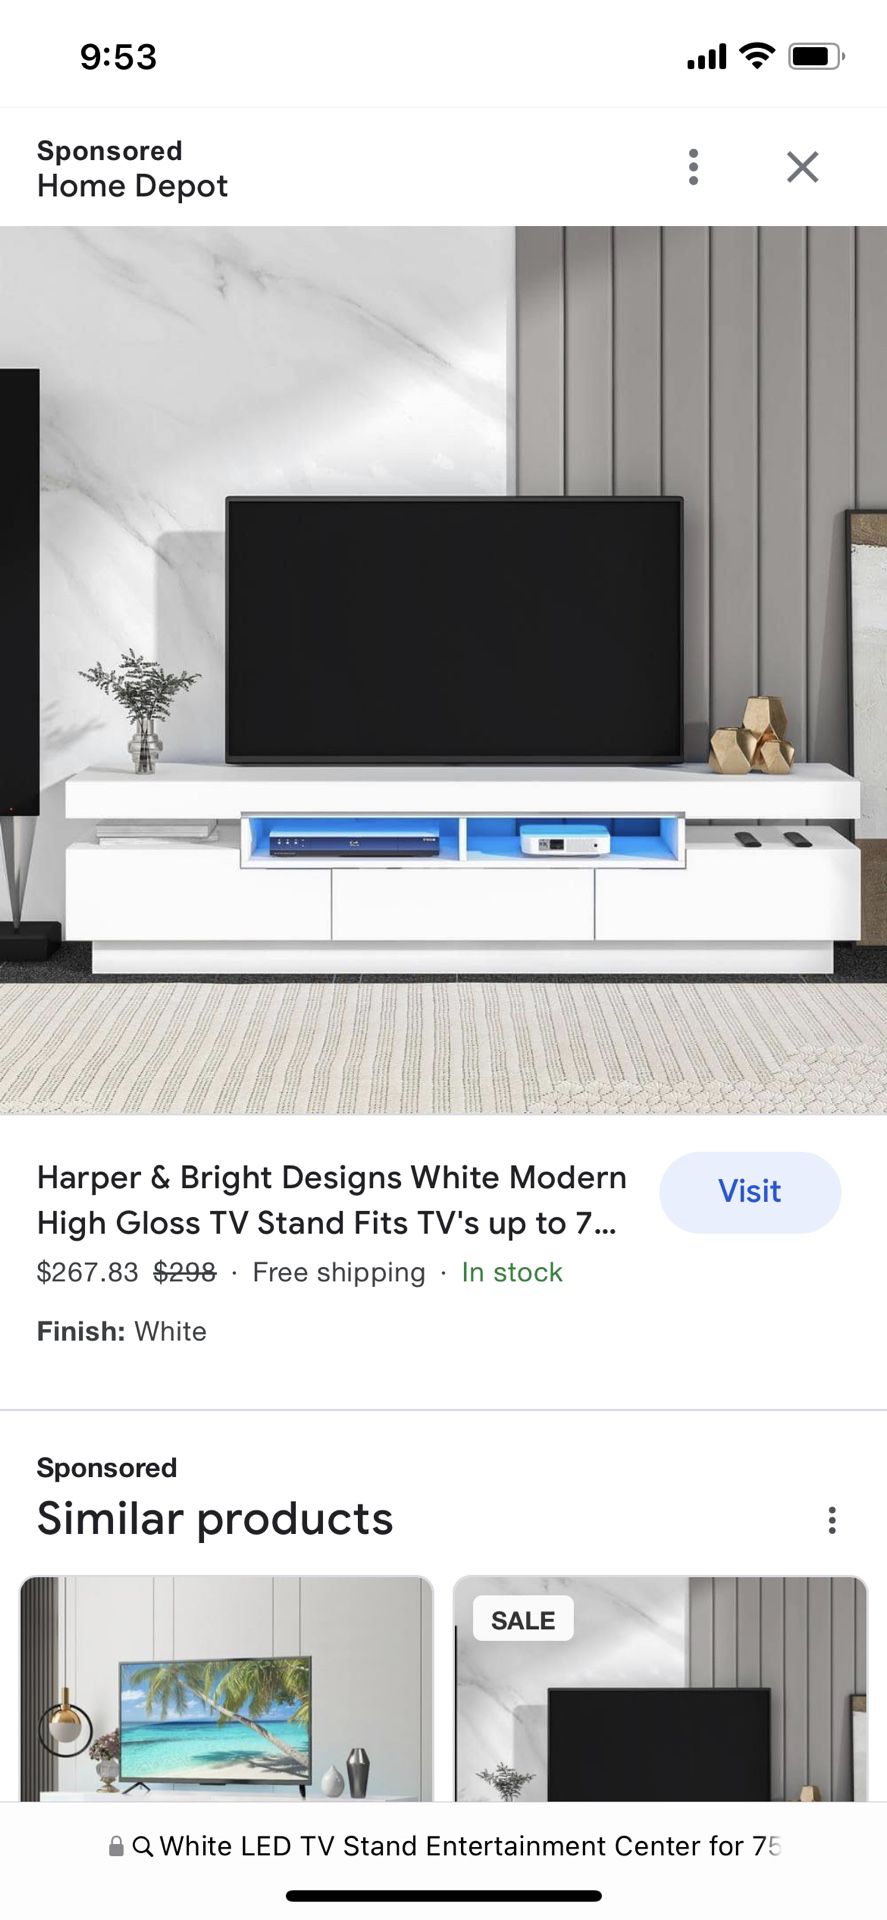 White LED TV Stand Entertainment Center 